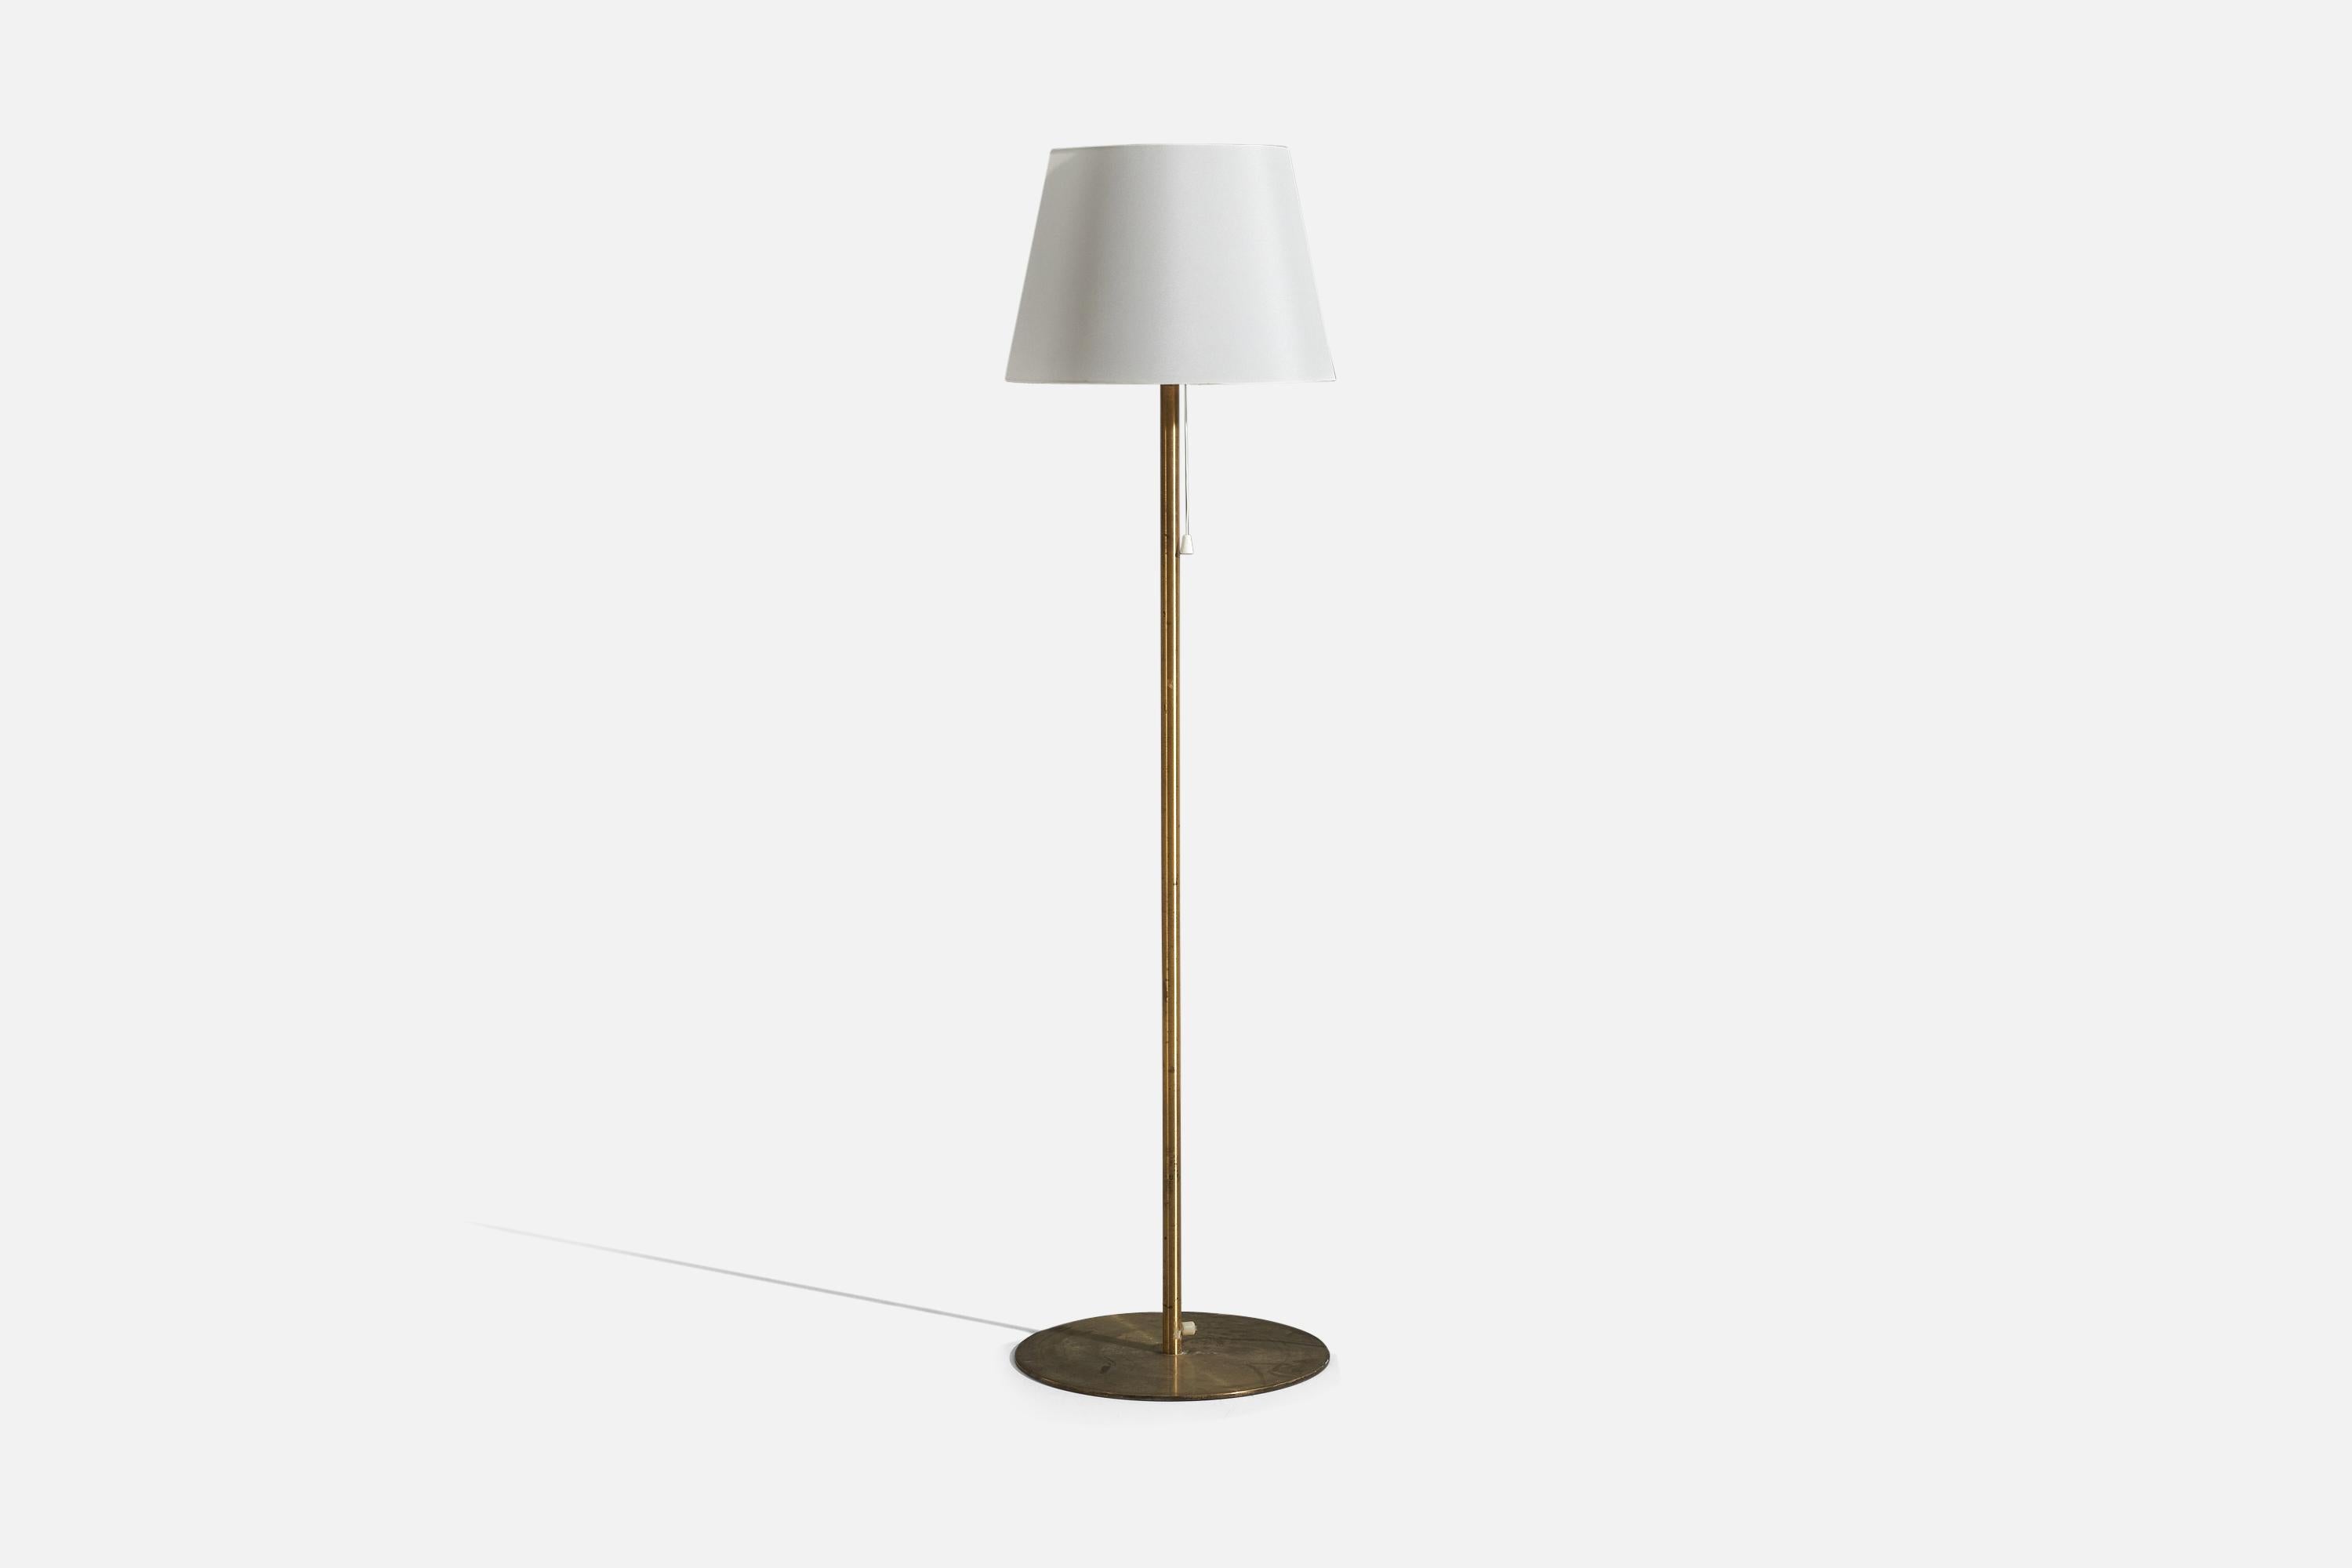 Un lampadaire en laiton avec un abat-jour en tissu, conçu et produit par Luxus Vittsjö, Suède, années 1960.

Vendu avec abat-jour 
Dimensions du lampadaire (pouces) : 48.25 x 13,875 x 13,875 (H x L x P)
Dimensions de l'abat-jour (pouces) : 13 x